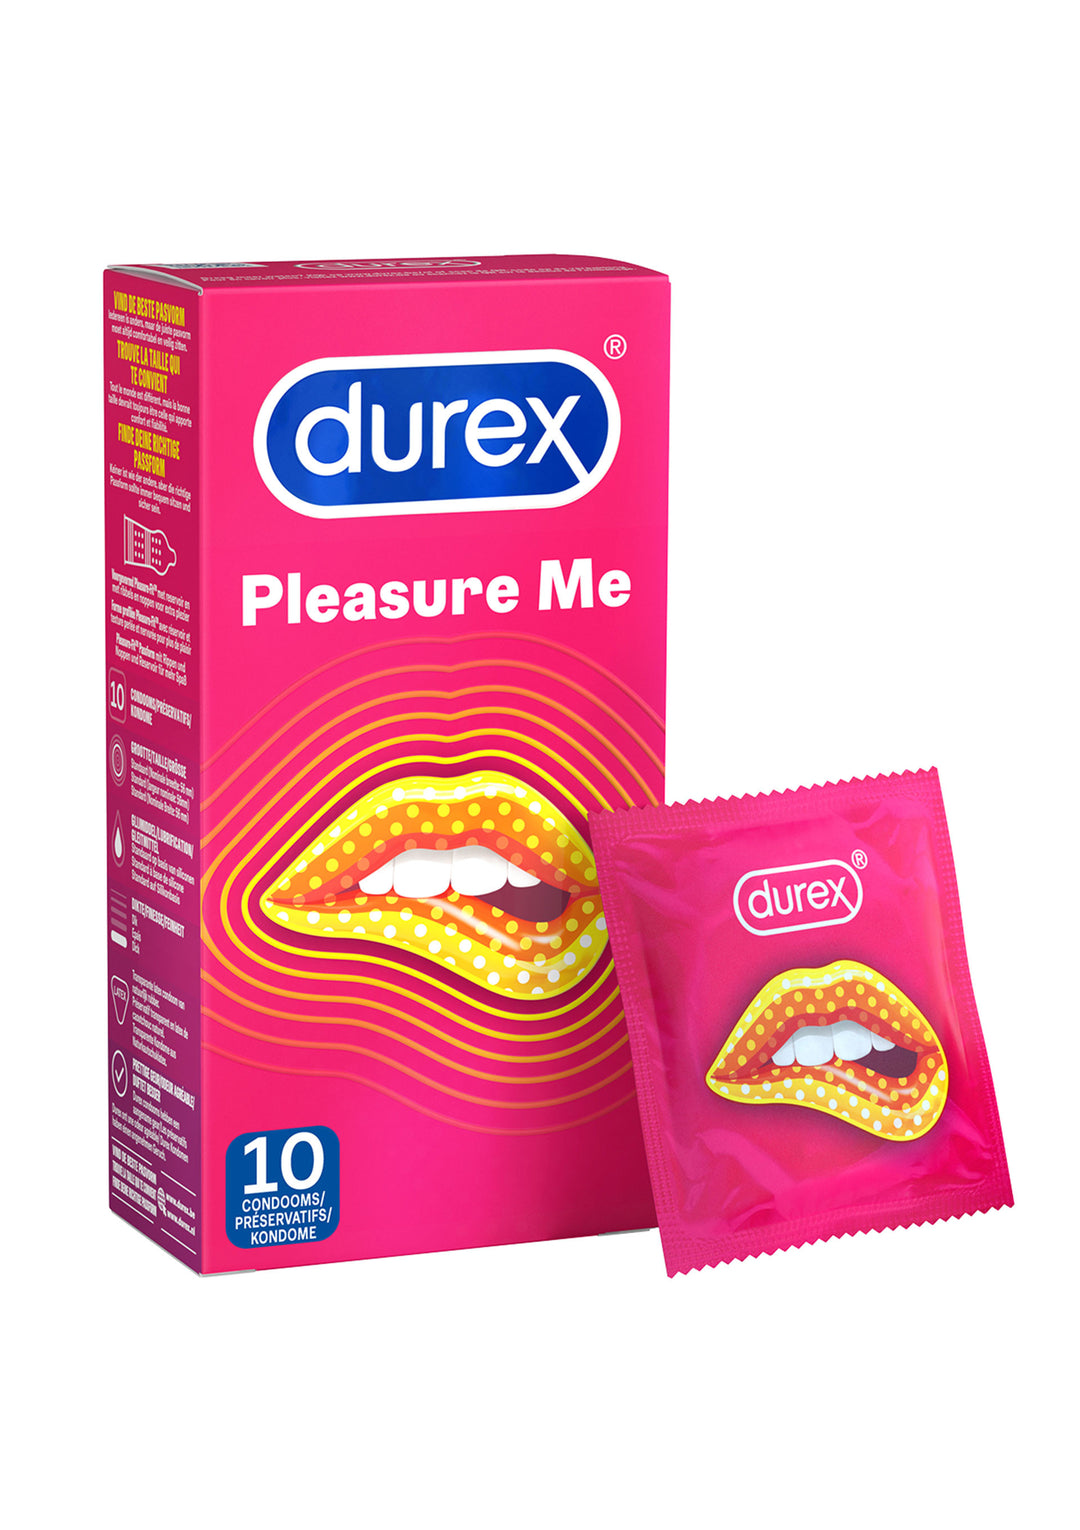 DUREX Pleasure Me condoms